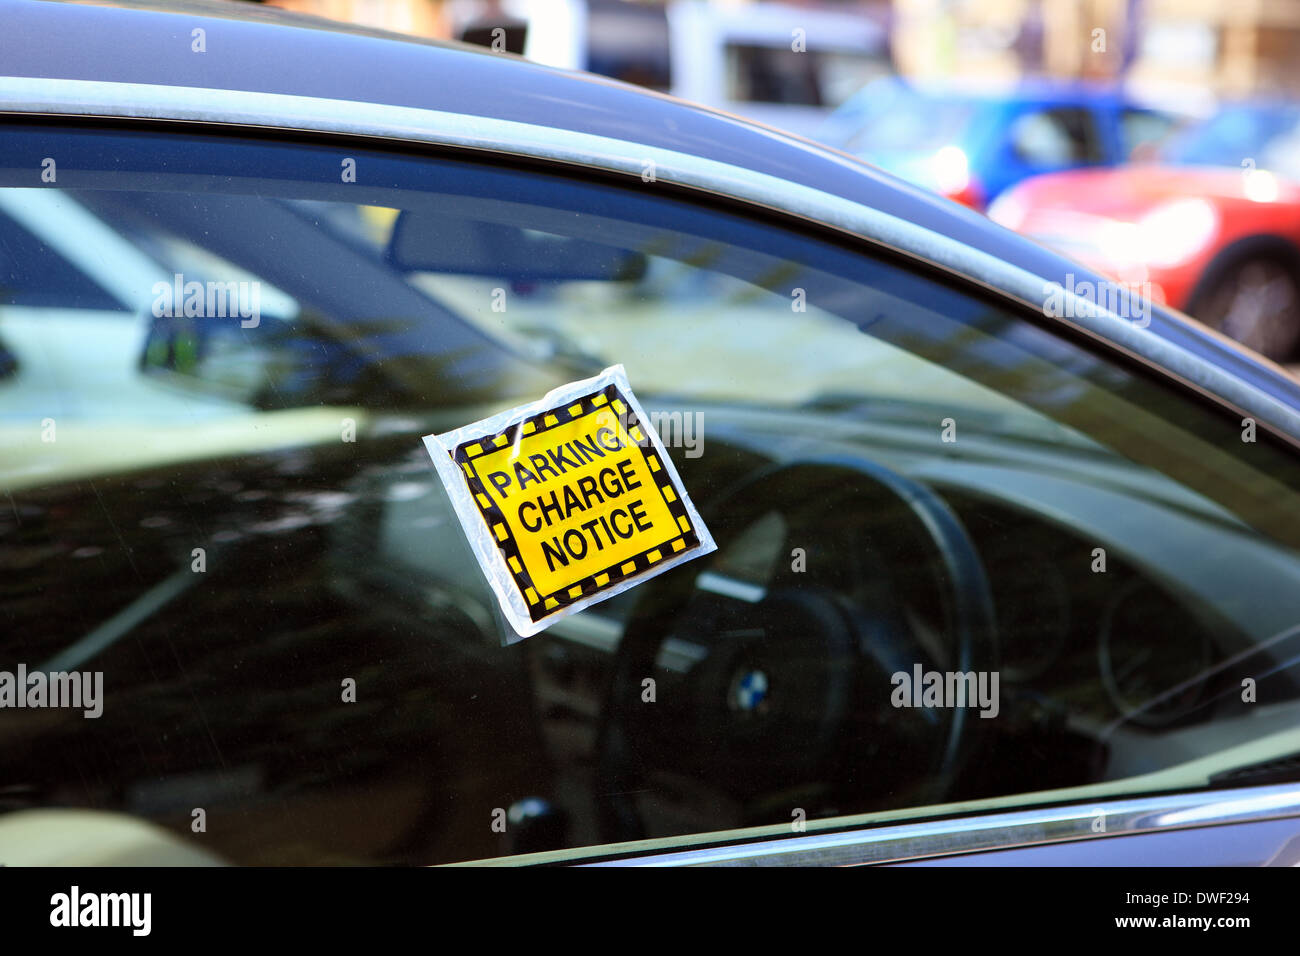 Avis sur les droits de stationnement sur la fenêtre d'une voiture Banque D'Images